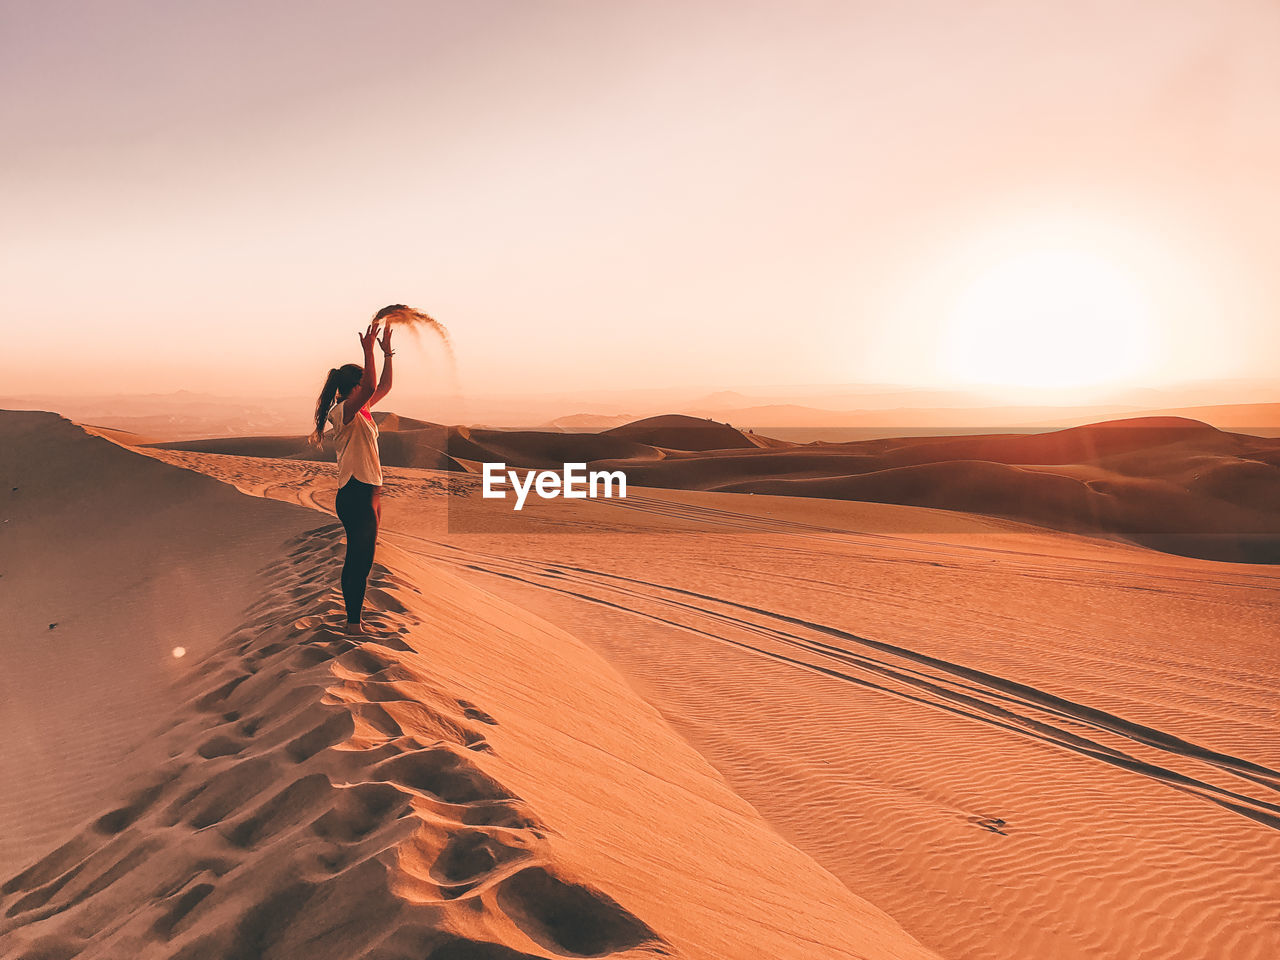 WOMAN STANDING ON SAND DUNE IN DESERT AGAINST SKY